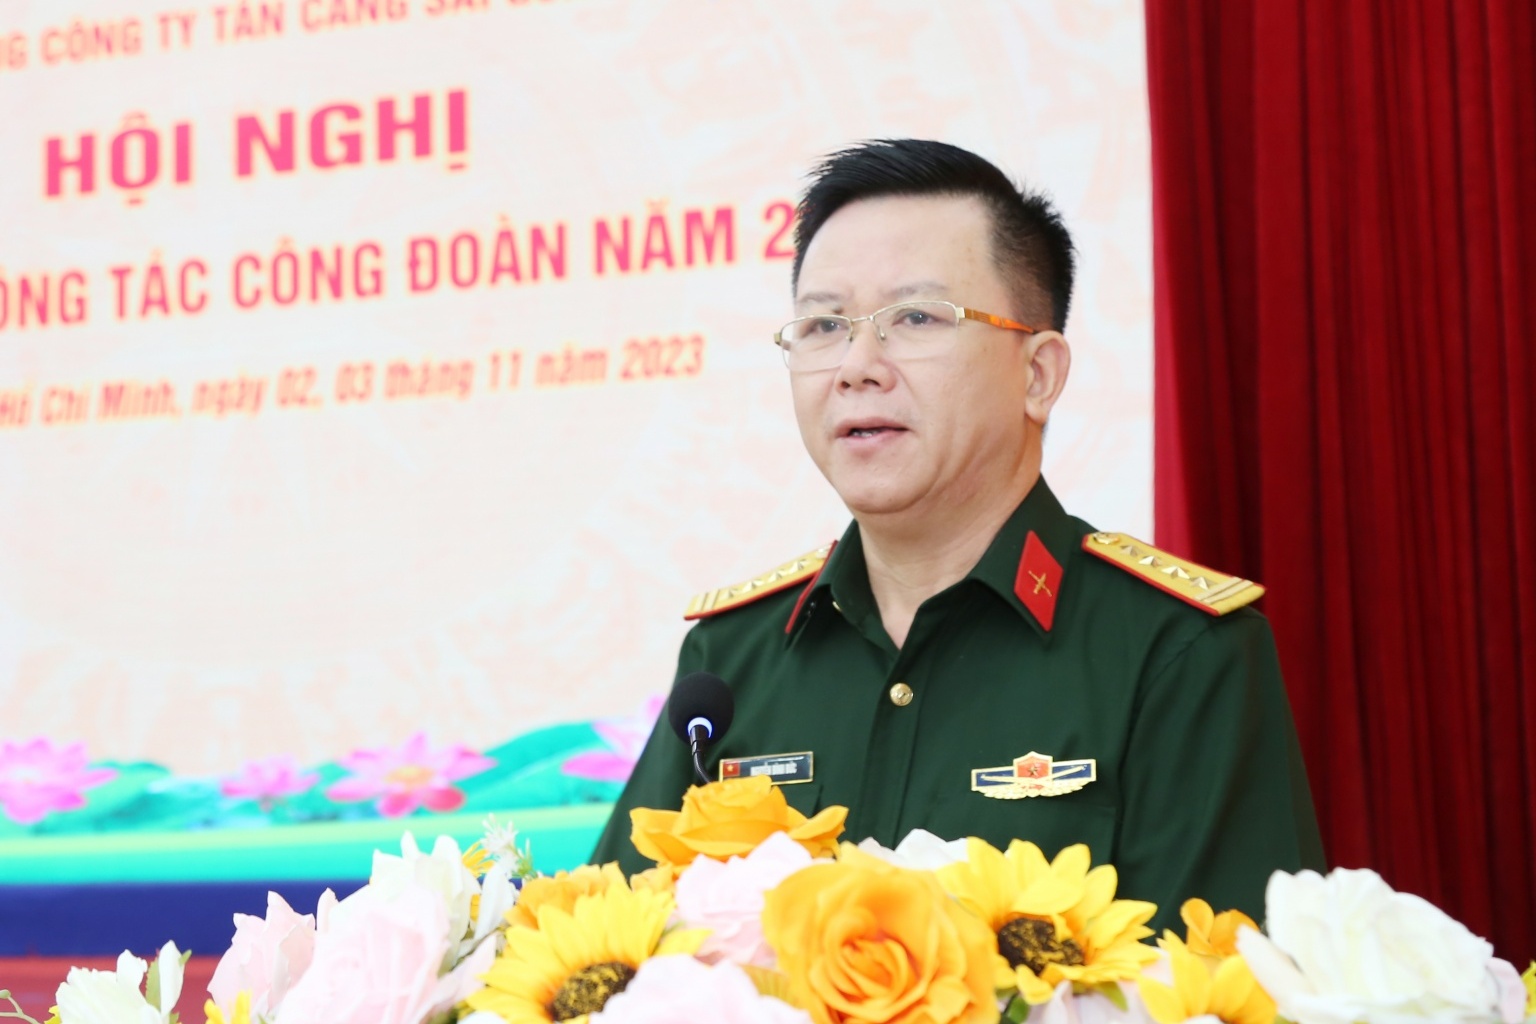 Tổng công ty Tân Cảng Sài Gòn tập huấn công tác công đoàn năm 2023